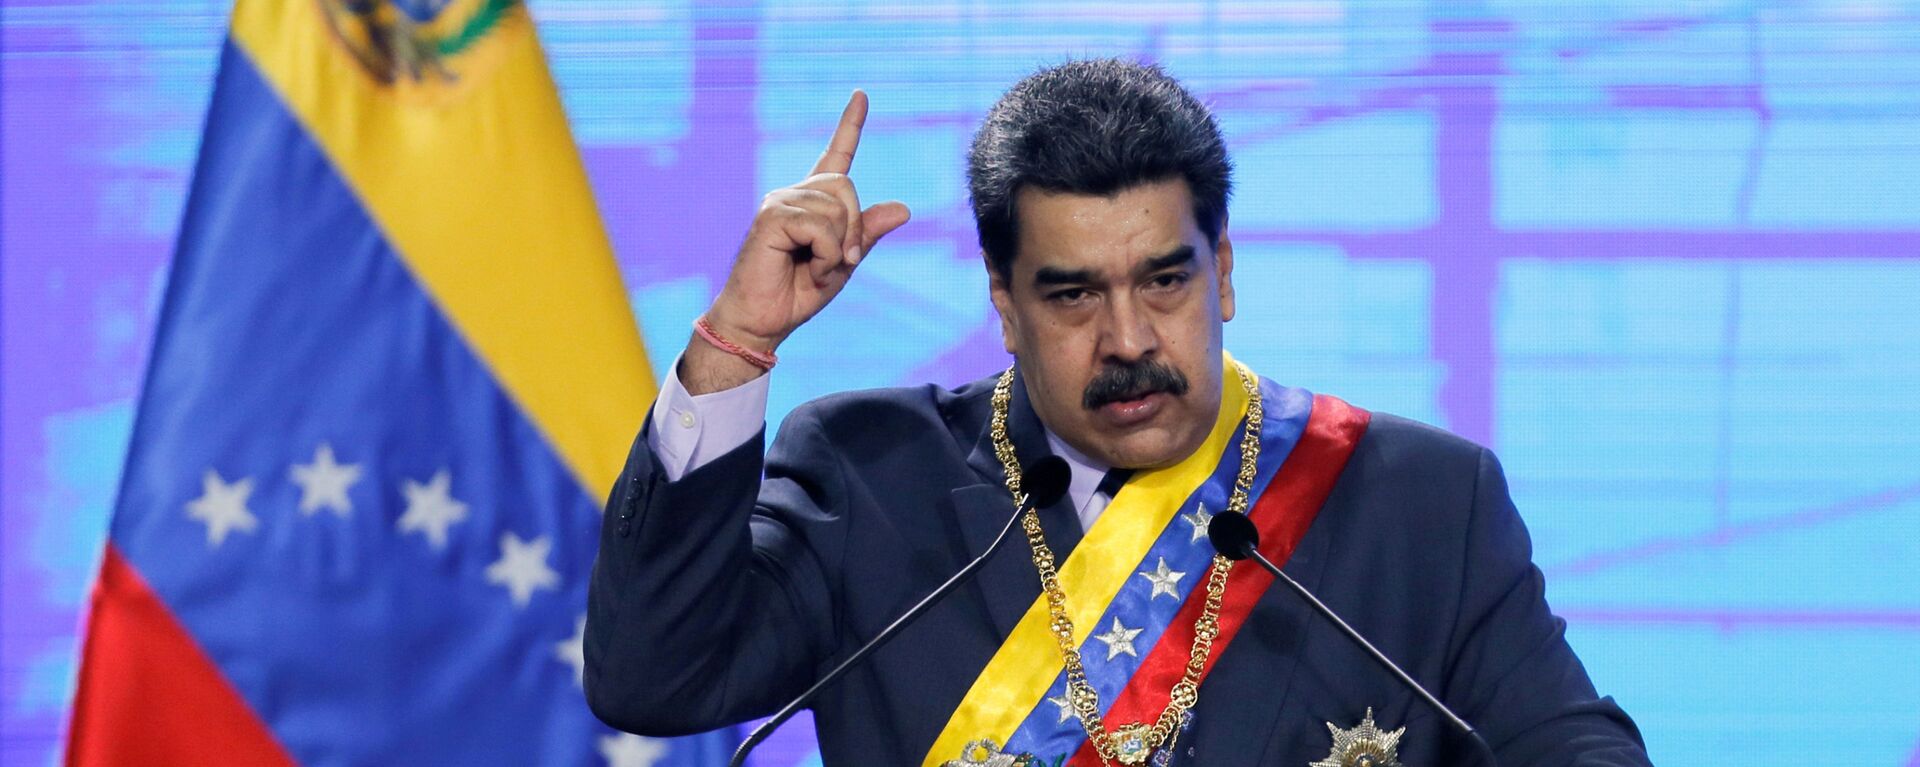 Nicolás Maduro, presidente de Venezuela - Sputnik Mundo, 1920, 24.02.2021